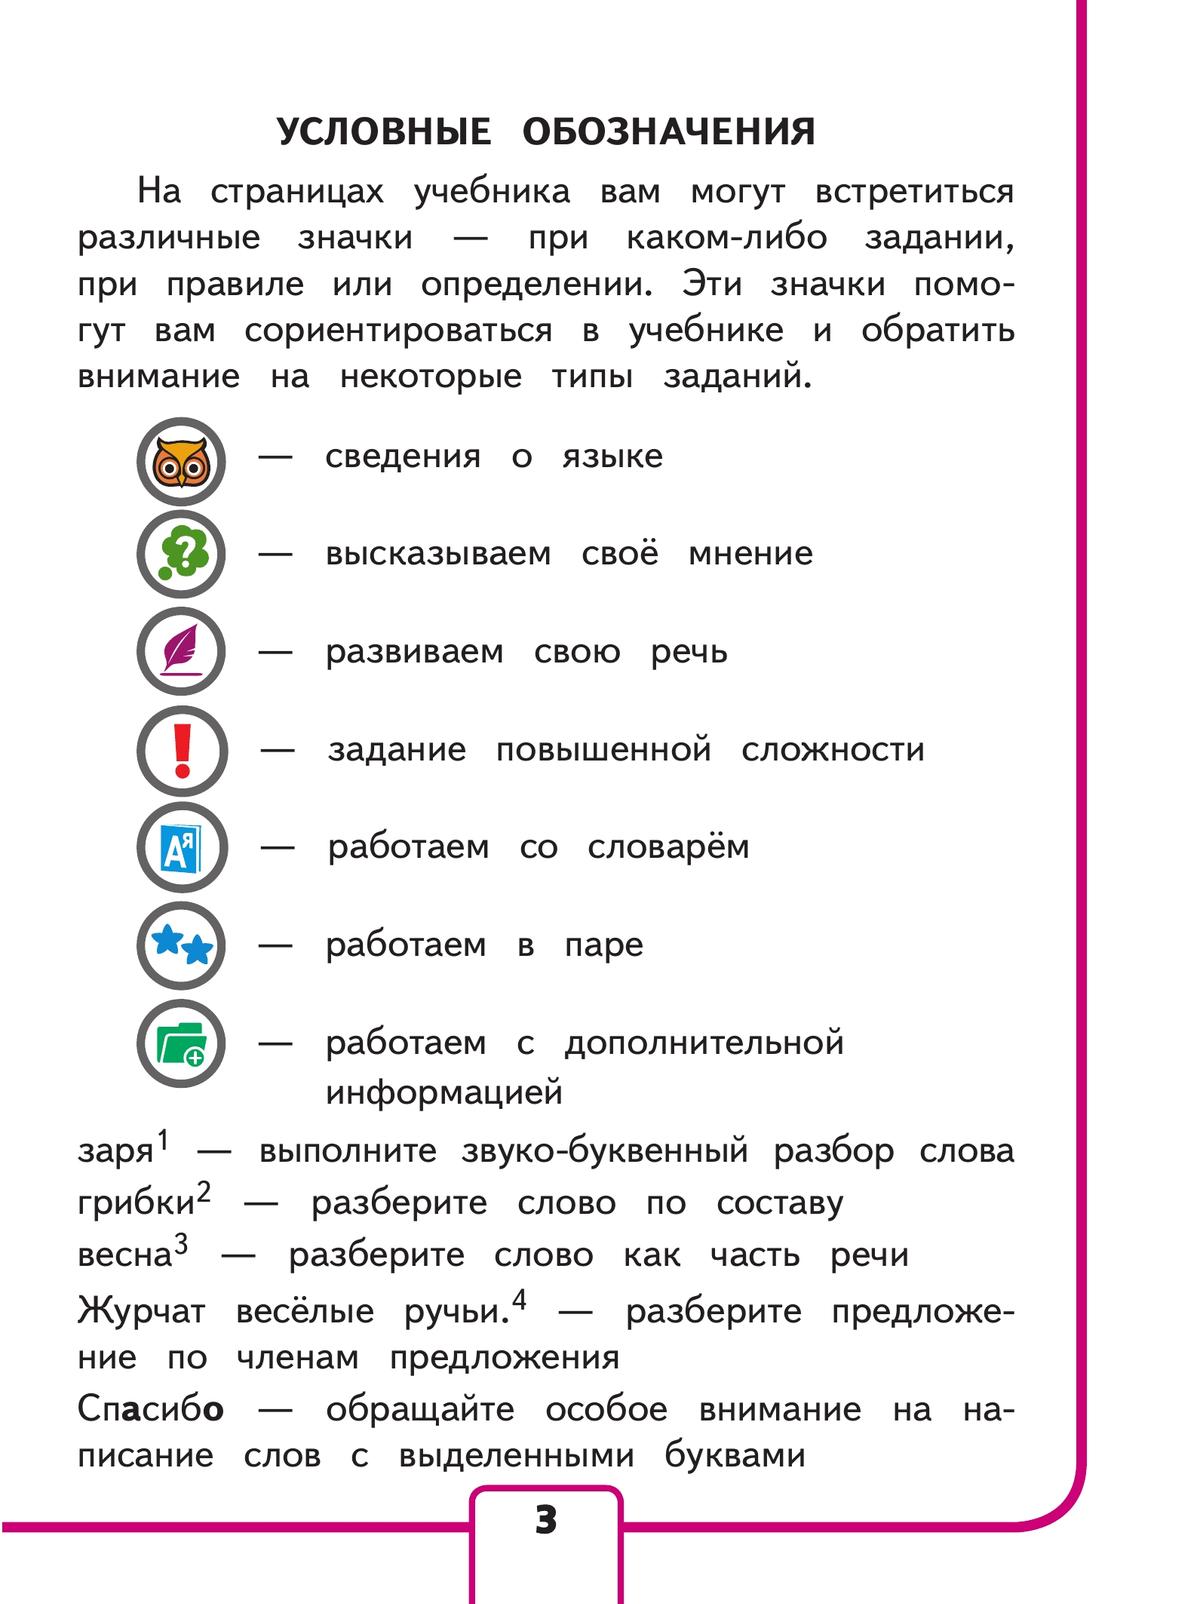 Русский язык. 3 класс. Учебное пособие. В 5 ч. Часть 4 (для слабовидящих обучающихся) 6